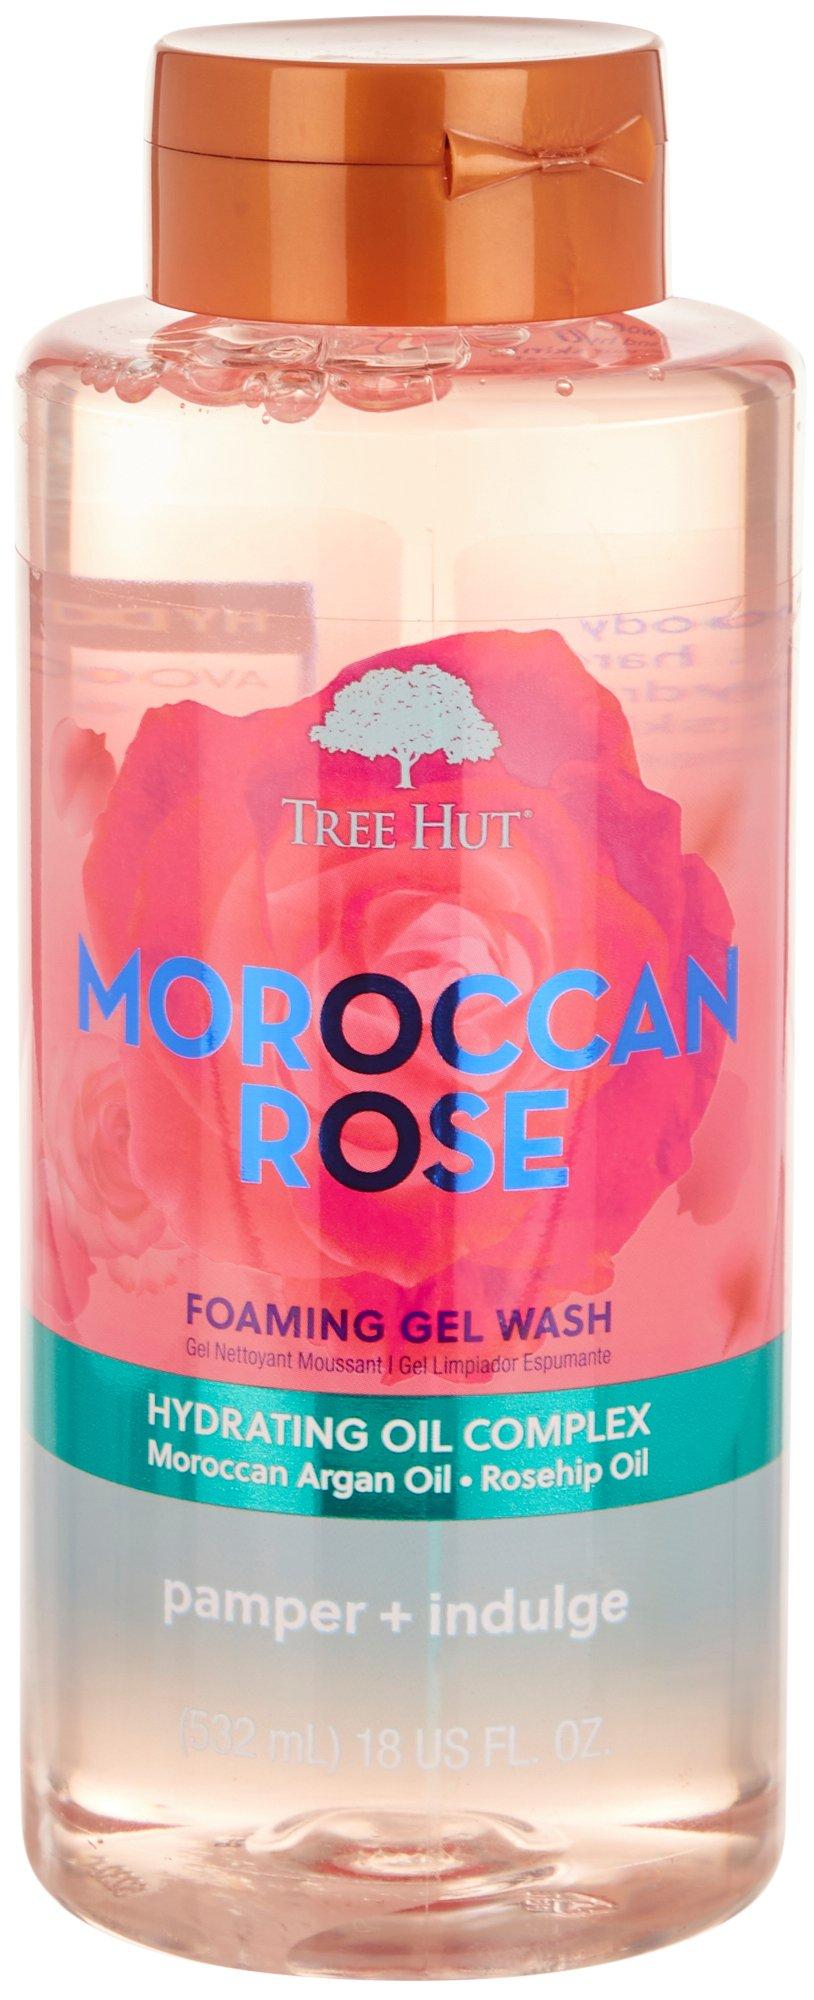 18 Fl.Oz. Moroccan Rose Foaming Gel Wash